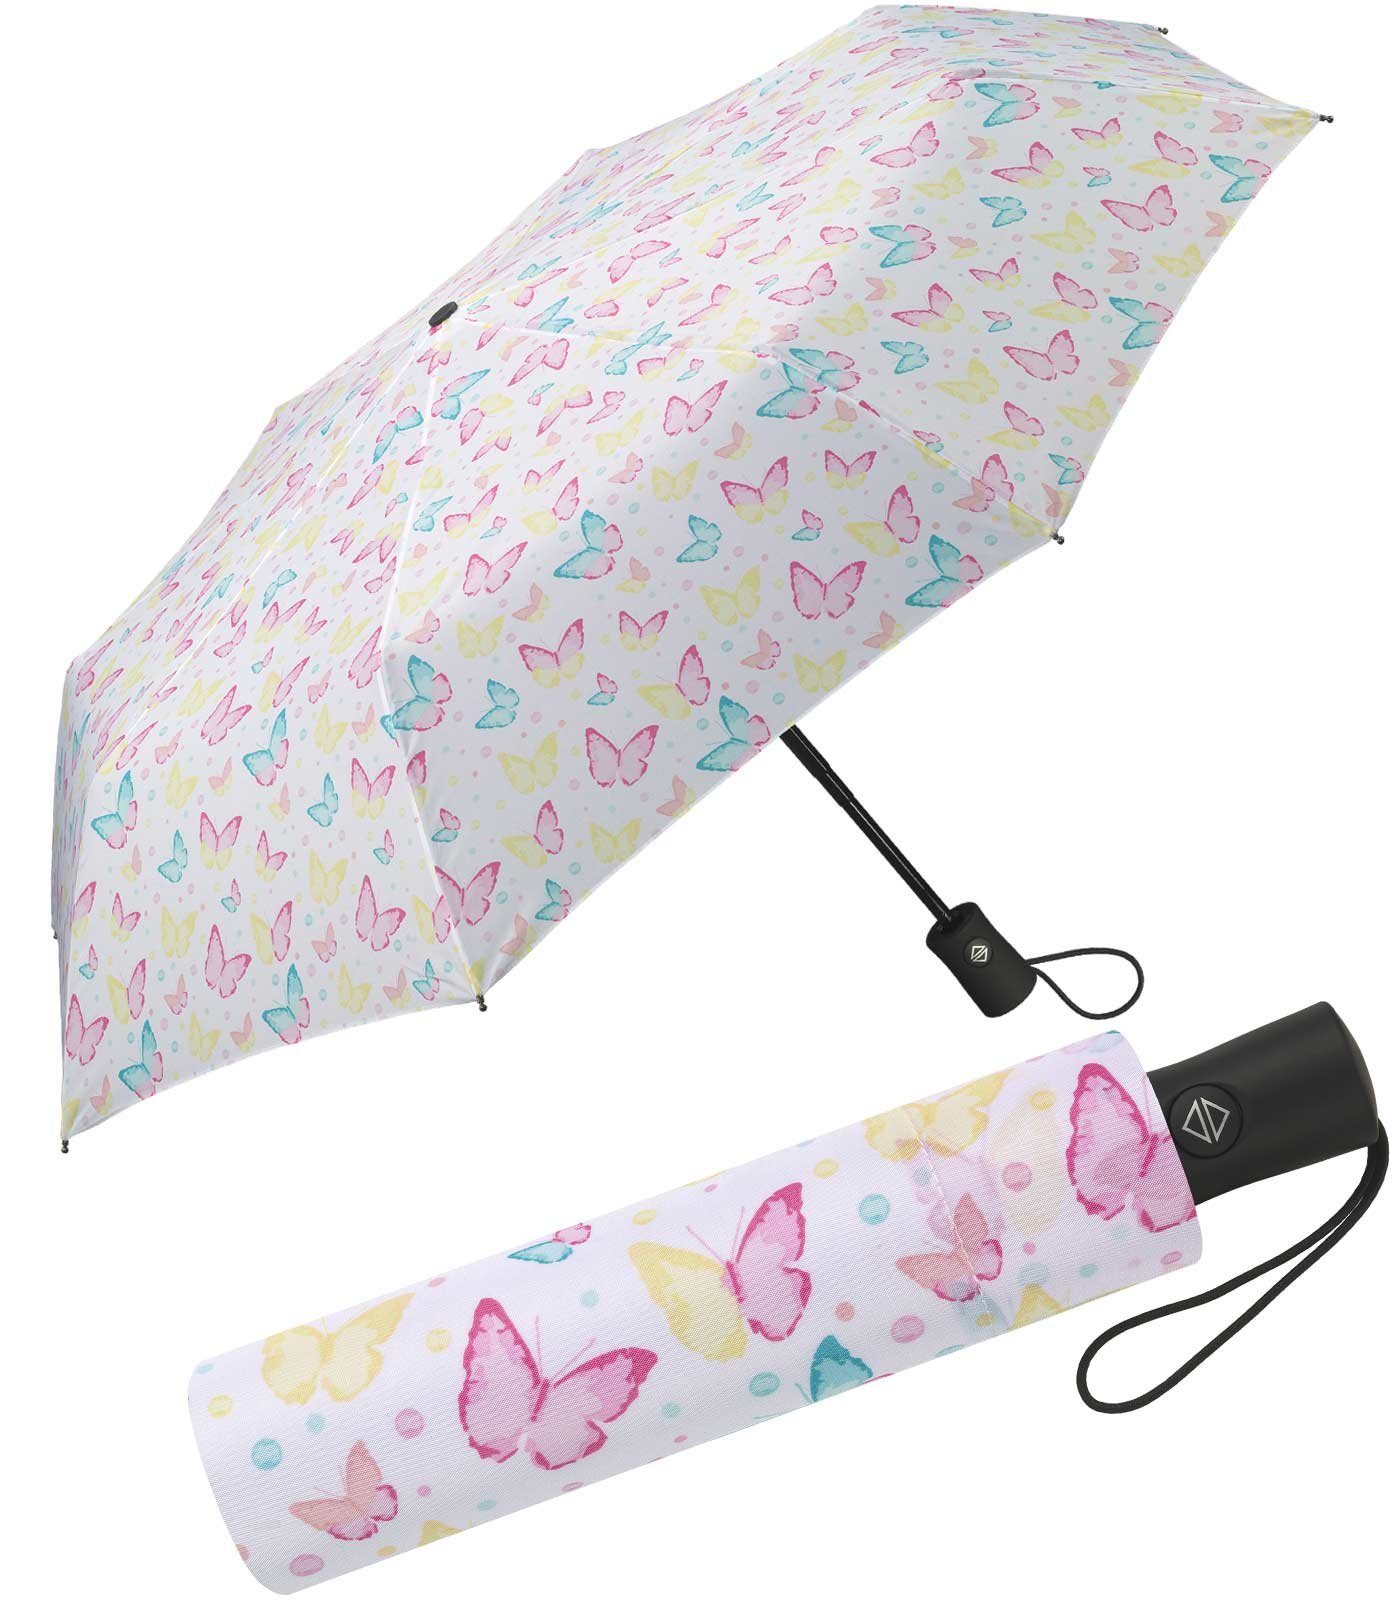 HAPPY RAIN Auf-Zu-Automatik, Damen-Regenschirm in zarten Pastellfarben Motive mit schöner zauberhafte Taschenregenschirm